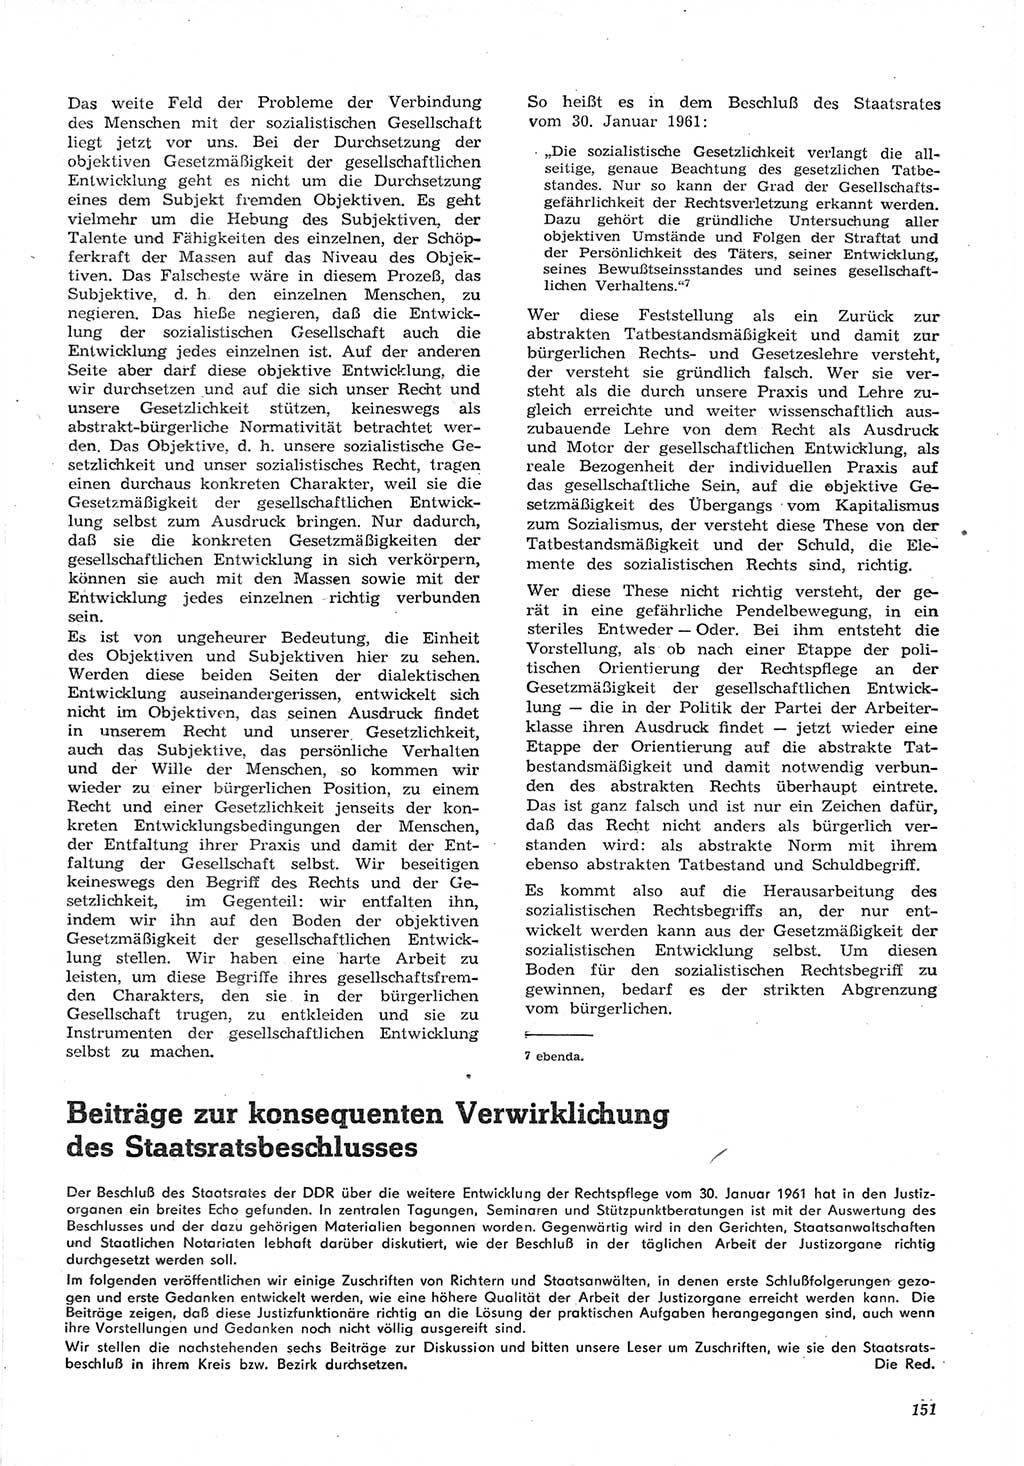 Neue Justiz (NJ), Zeitschrift für Recht und Rechtswissenschaft [Deutsche Demokratische Republik (DDR)], 15. Jahrgang 1961, Seite 151 (NJ DDR 1961, S. 151)